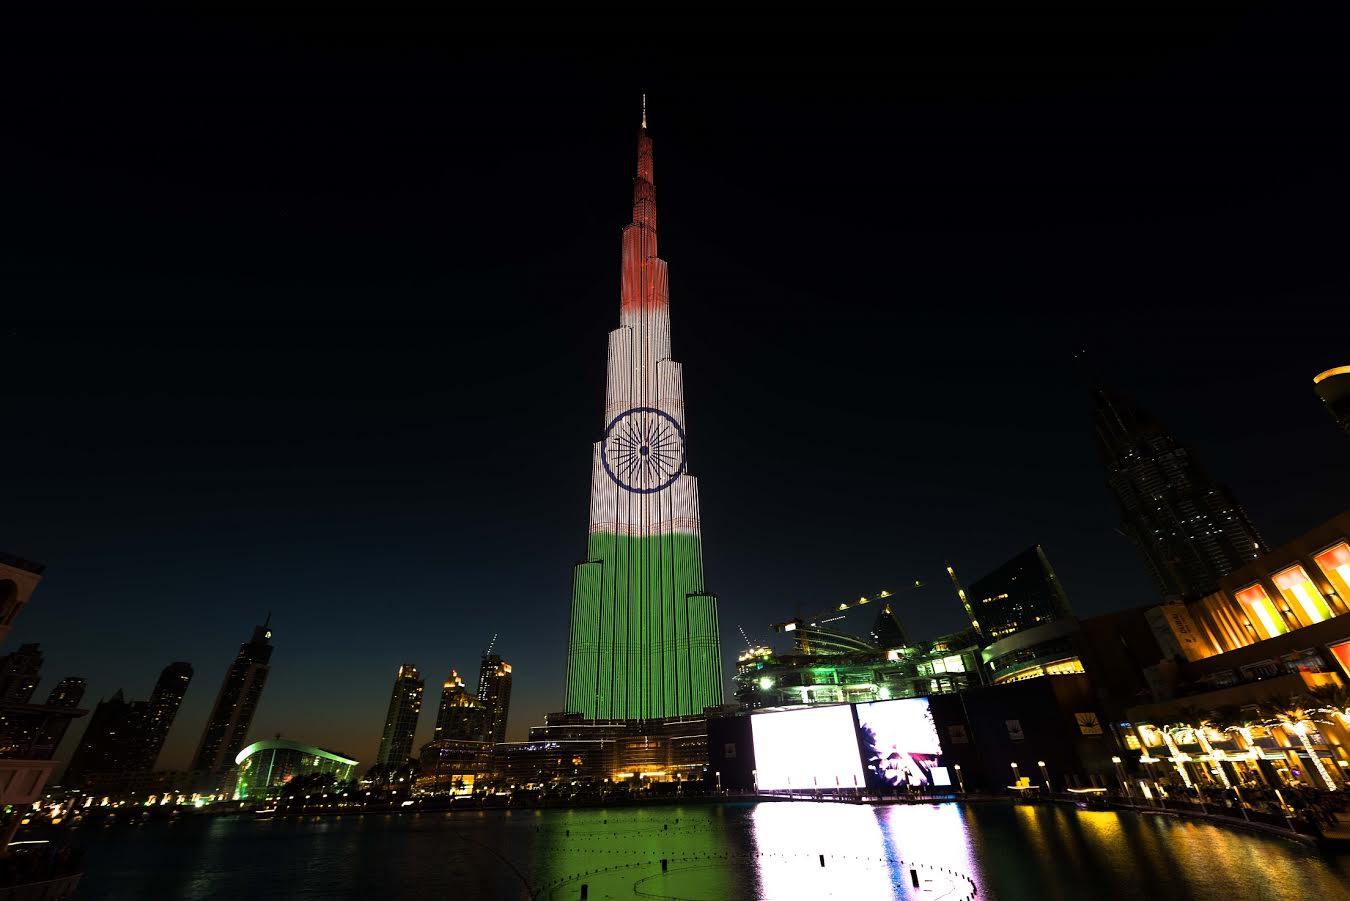 “إعمار” تحتفل بيوم الجمهورية الثامن والستين بإنارة برج خليفة بألوان العلم الوطني الهندي